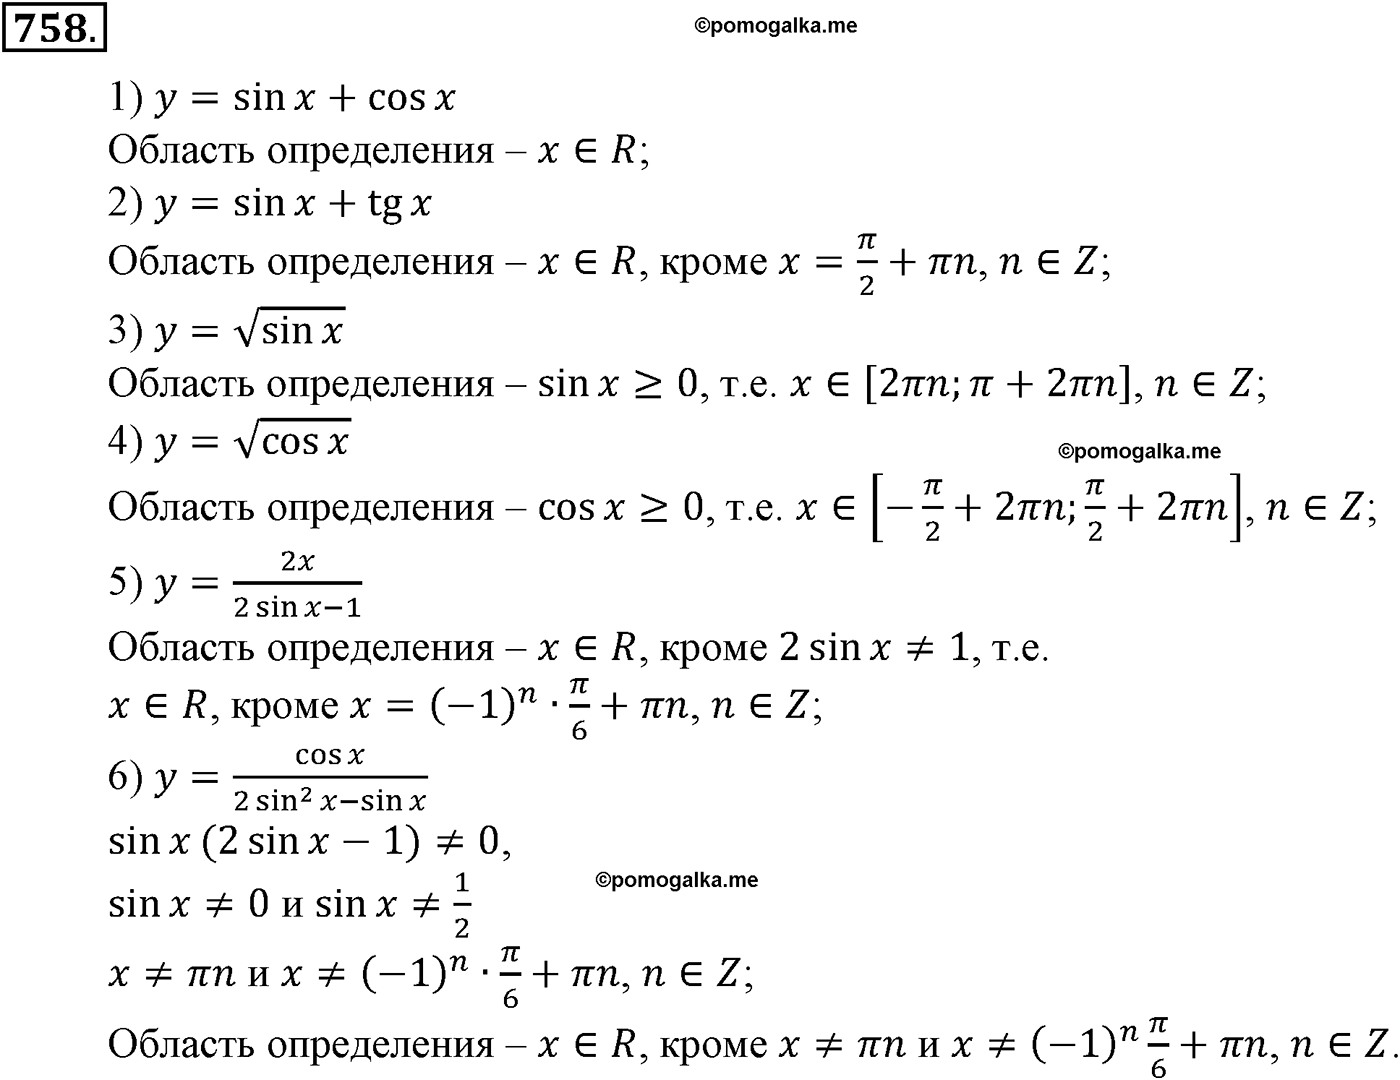 разбор задачи №758 по алгебре за 10-11 класс из учебника Алимова, Колягина